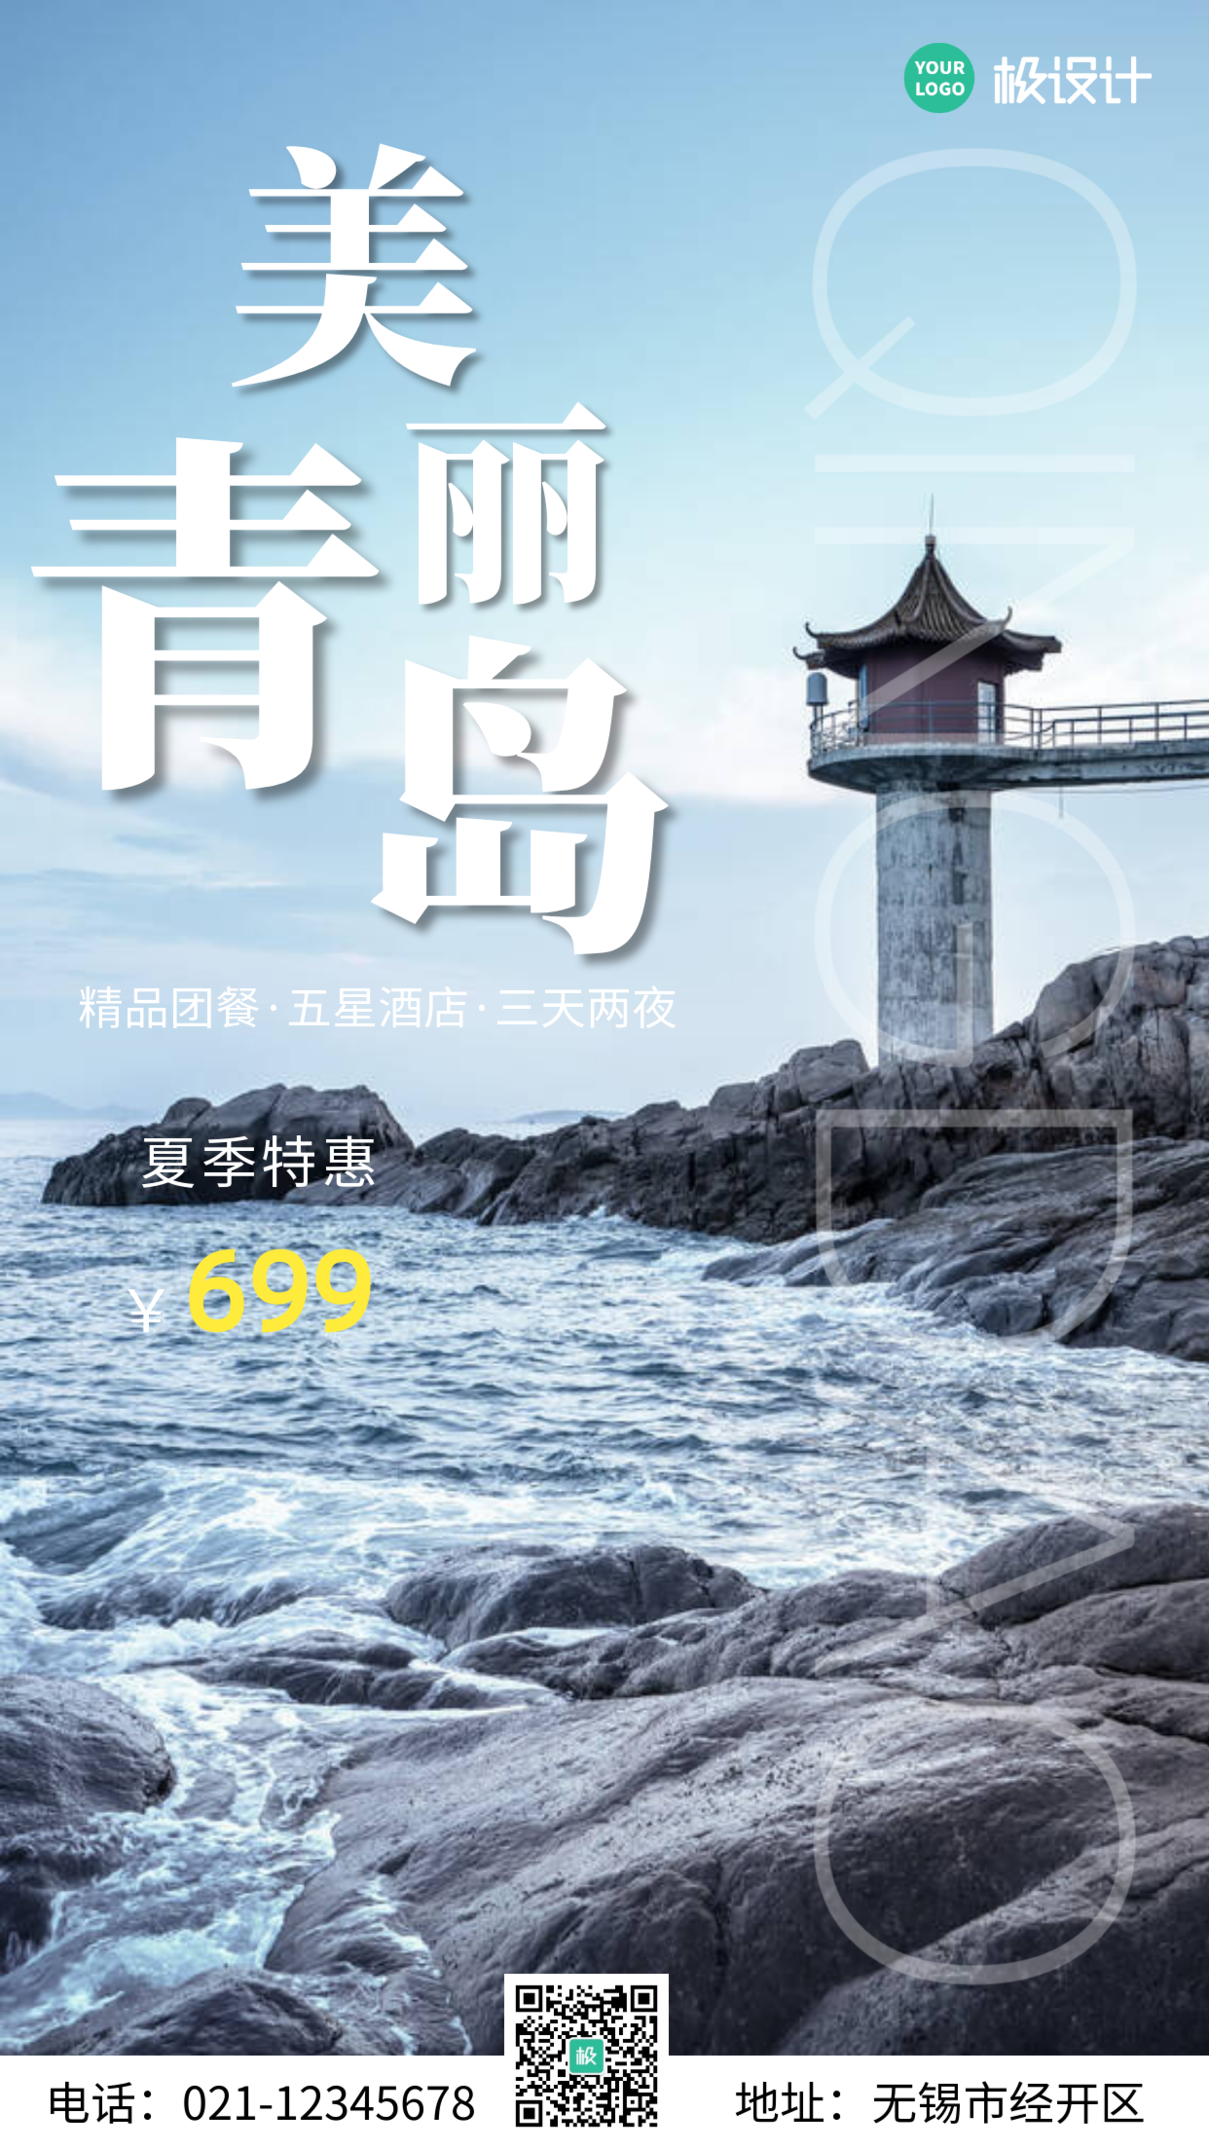 简约风摄影图青岛宣传旅游手机营销海报